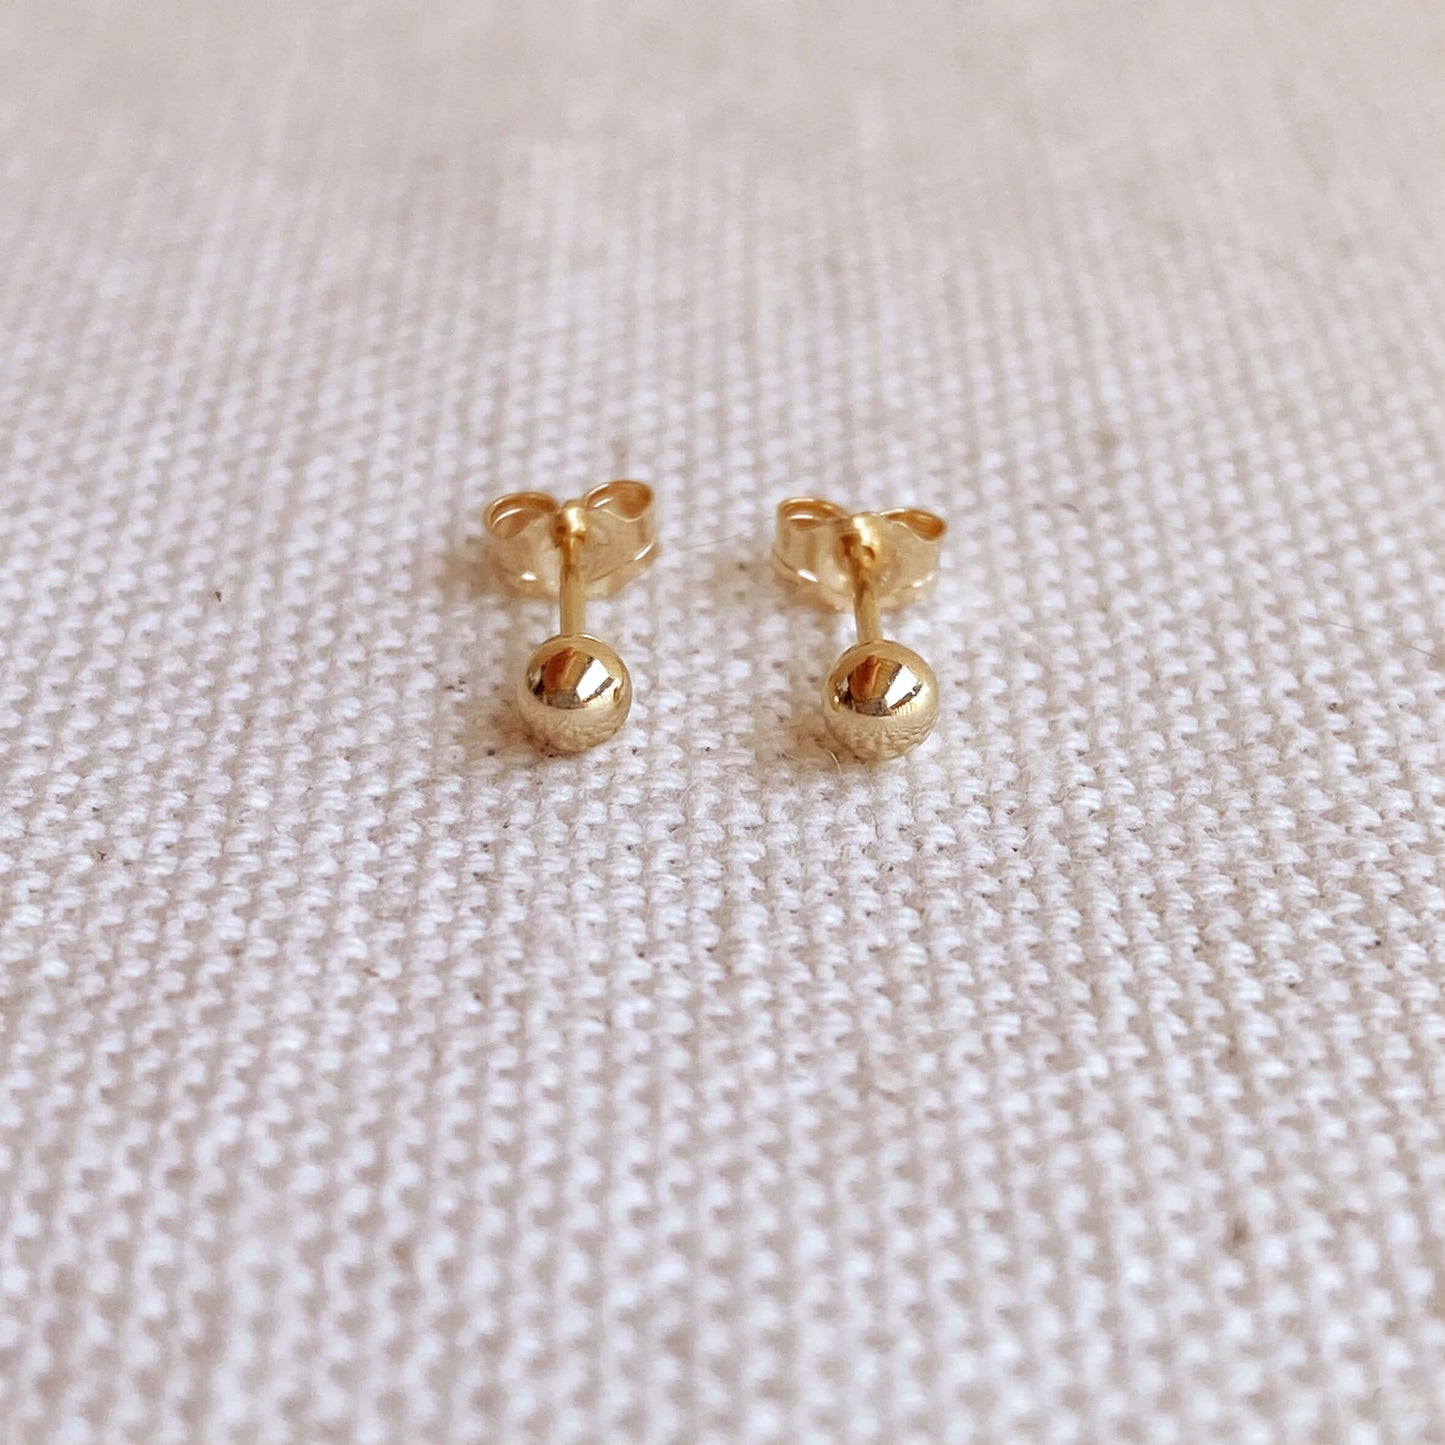 GoldFi 14k Solid Gold 3mm Ball Stud Piercing Earrings